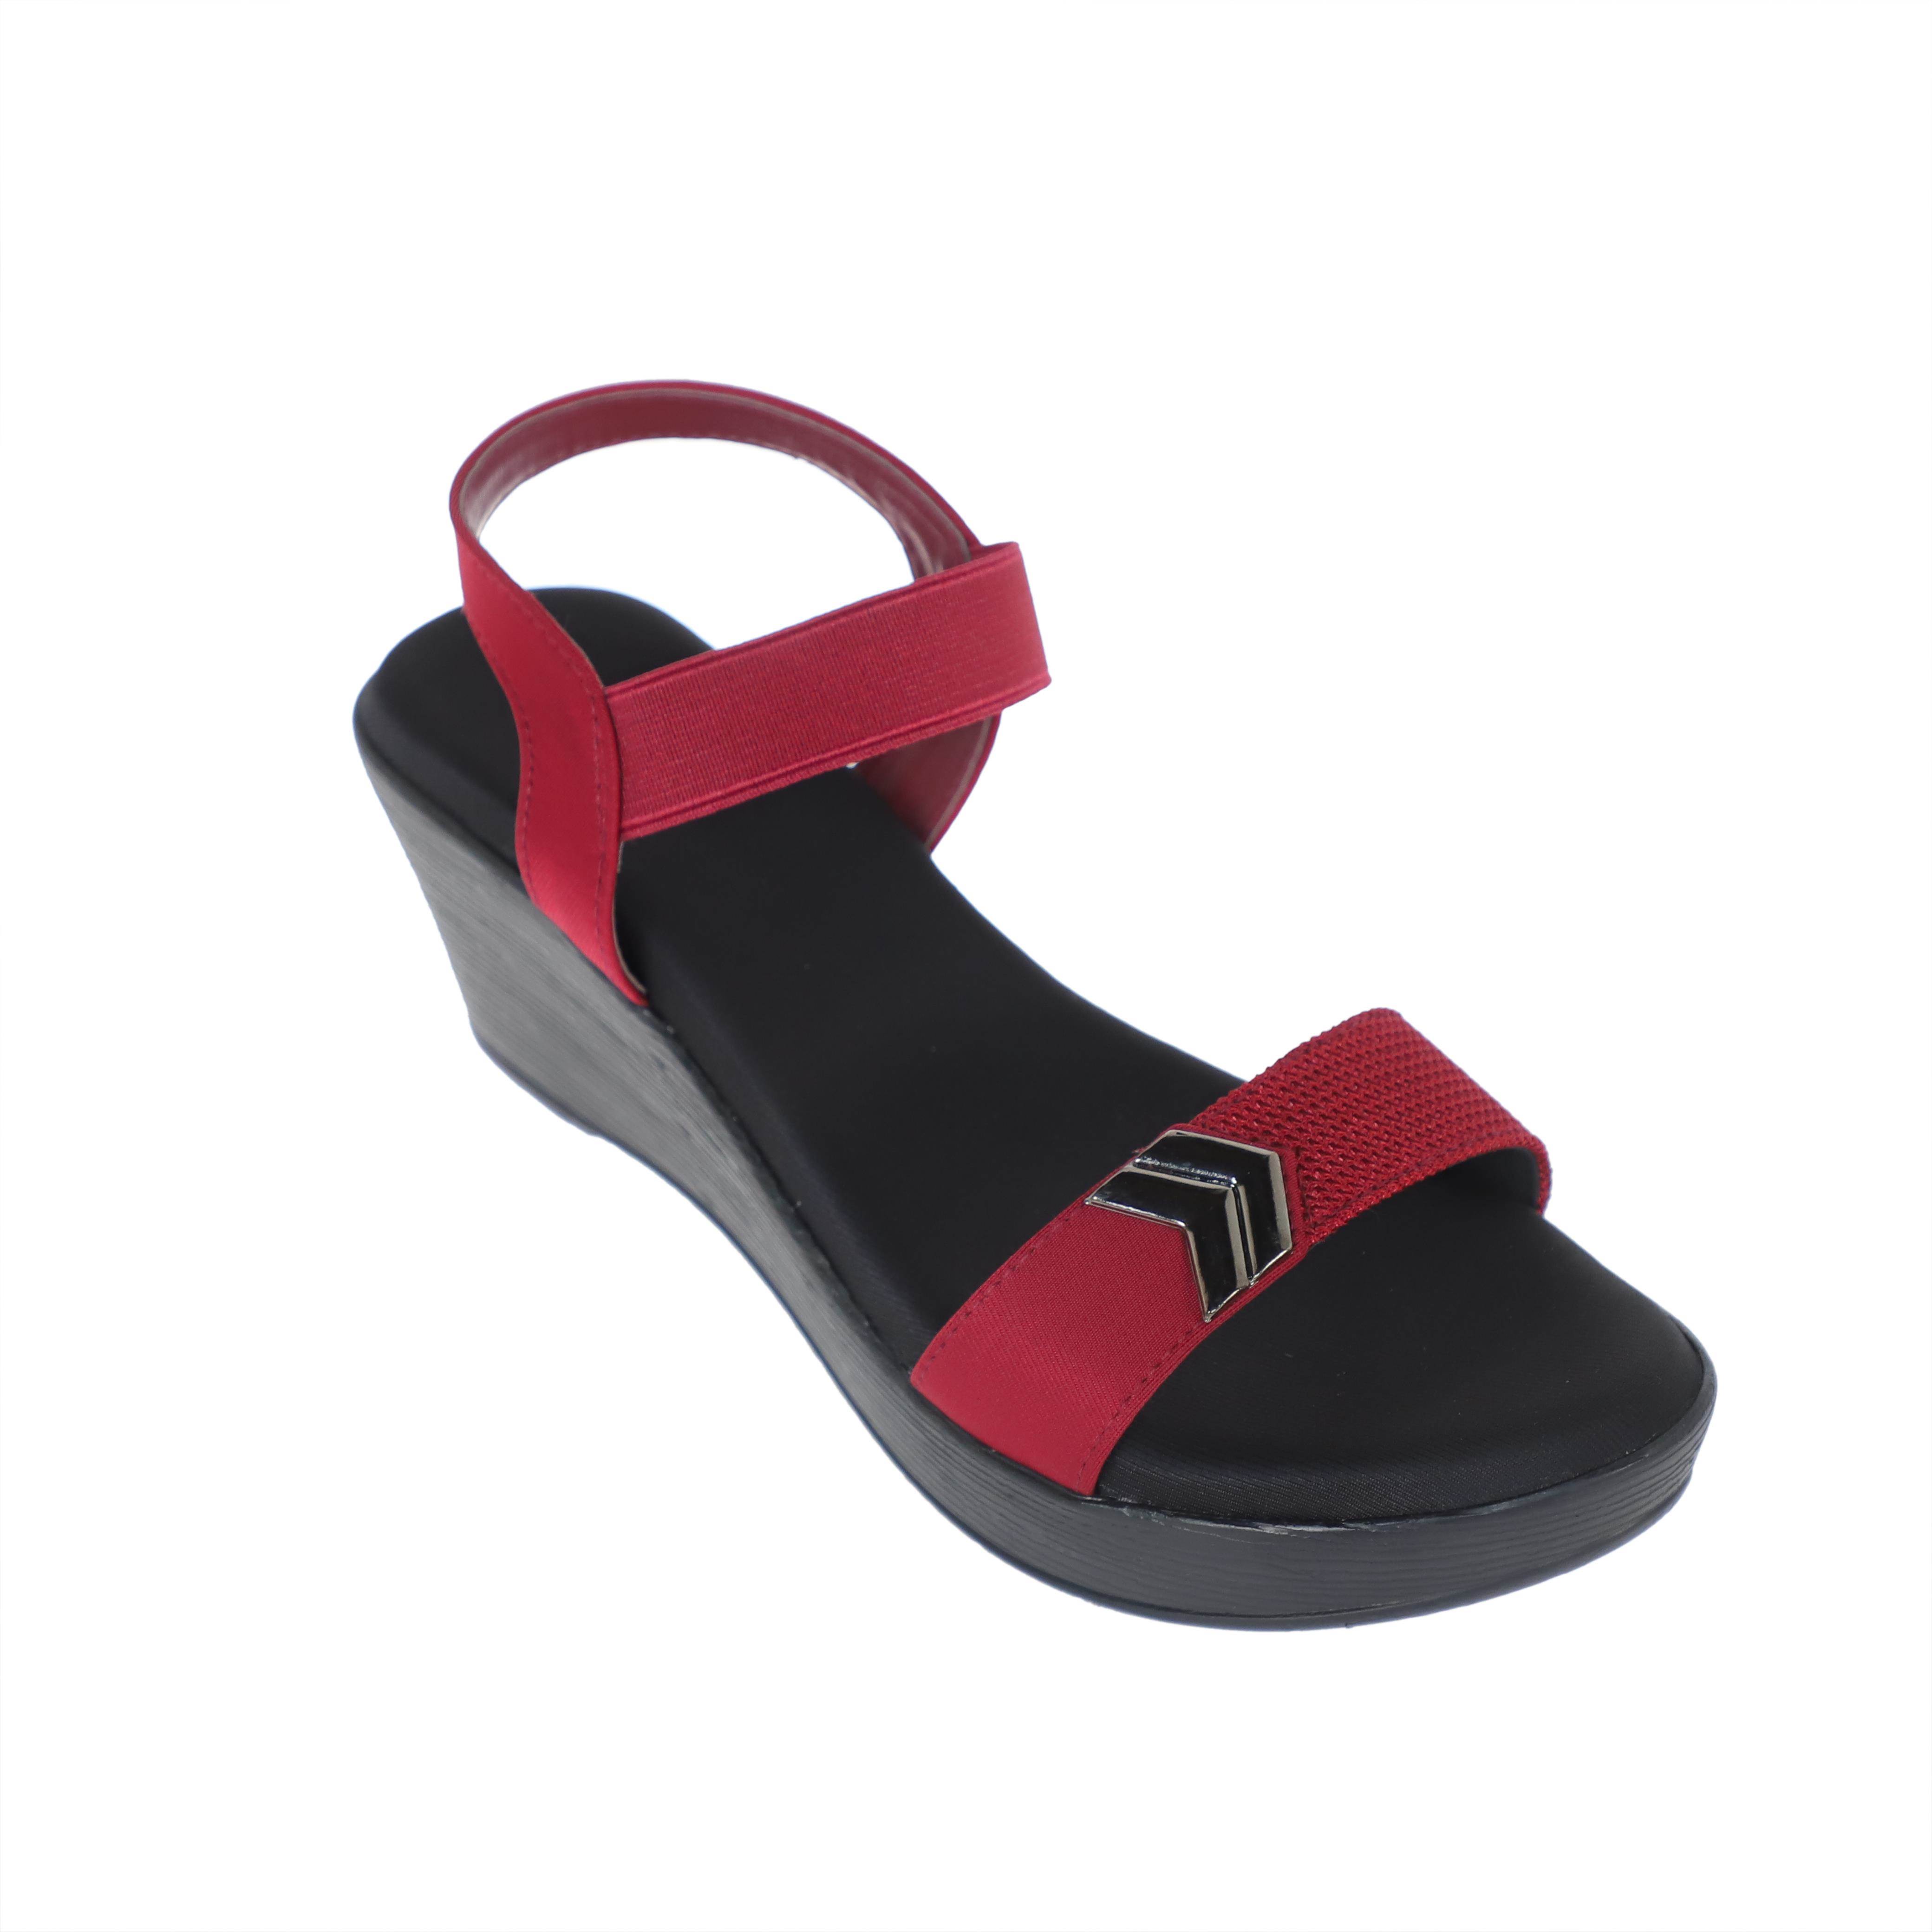 Sanlee Brand Womens Casual Block Heel Sandal LSP4077 (Maroon) :: RAJASHOES